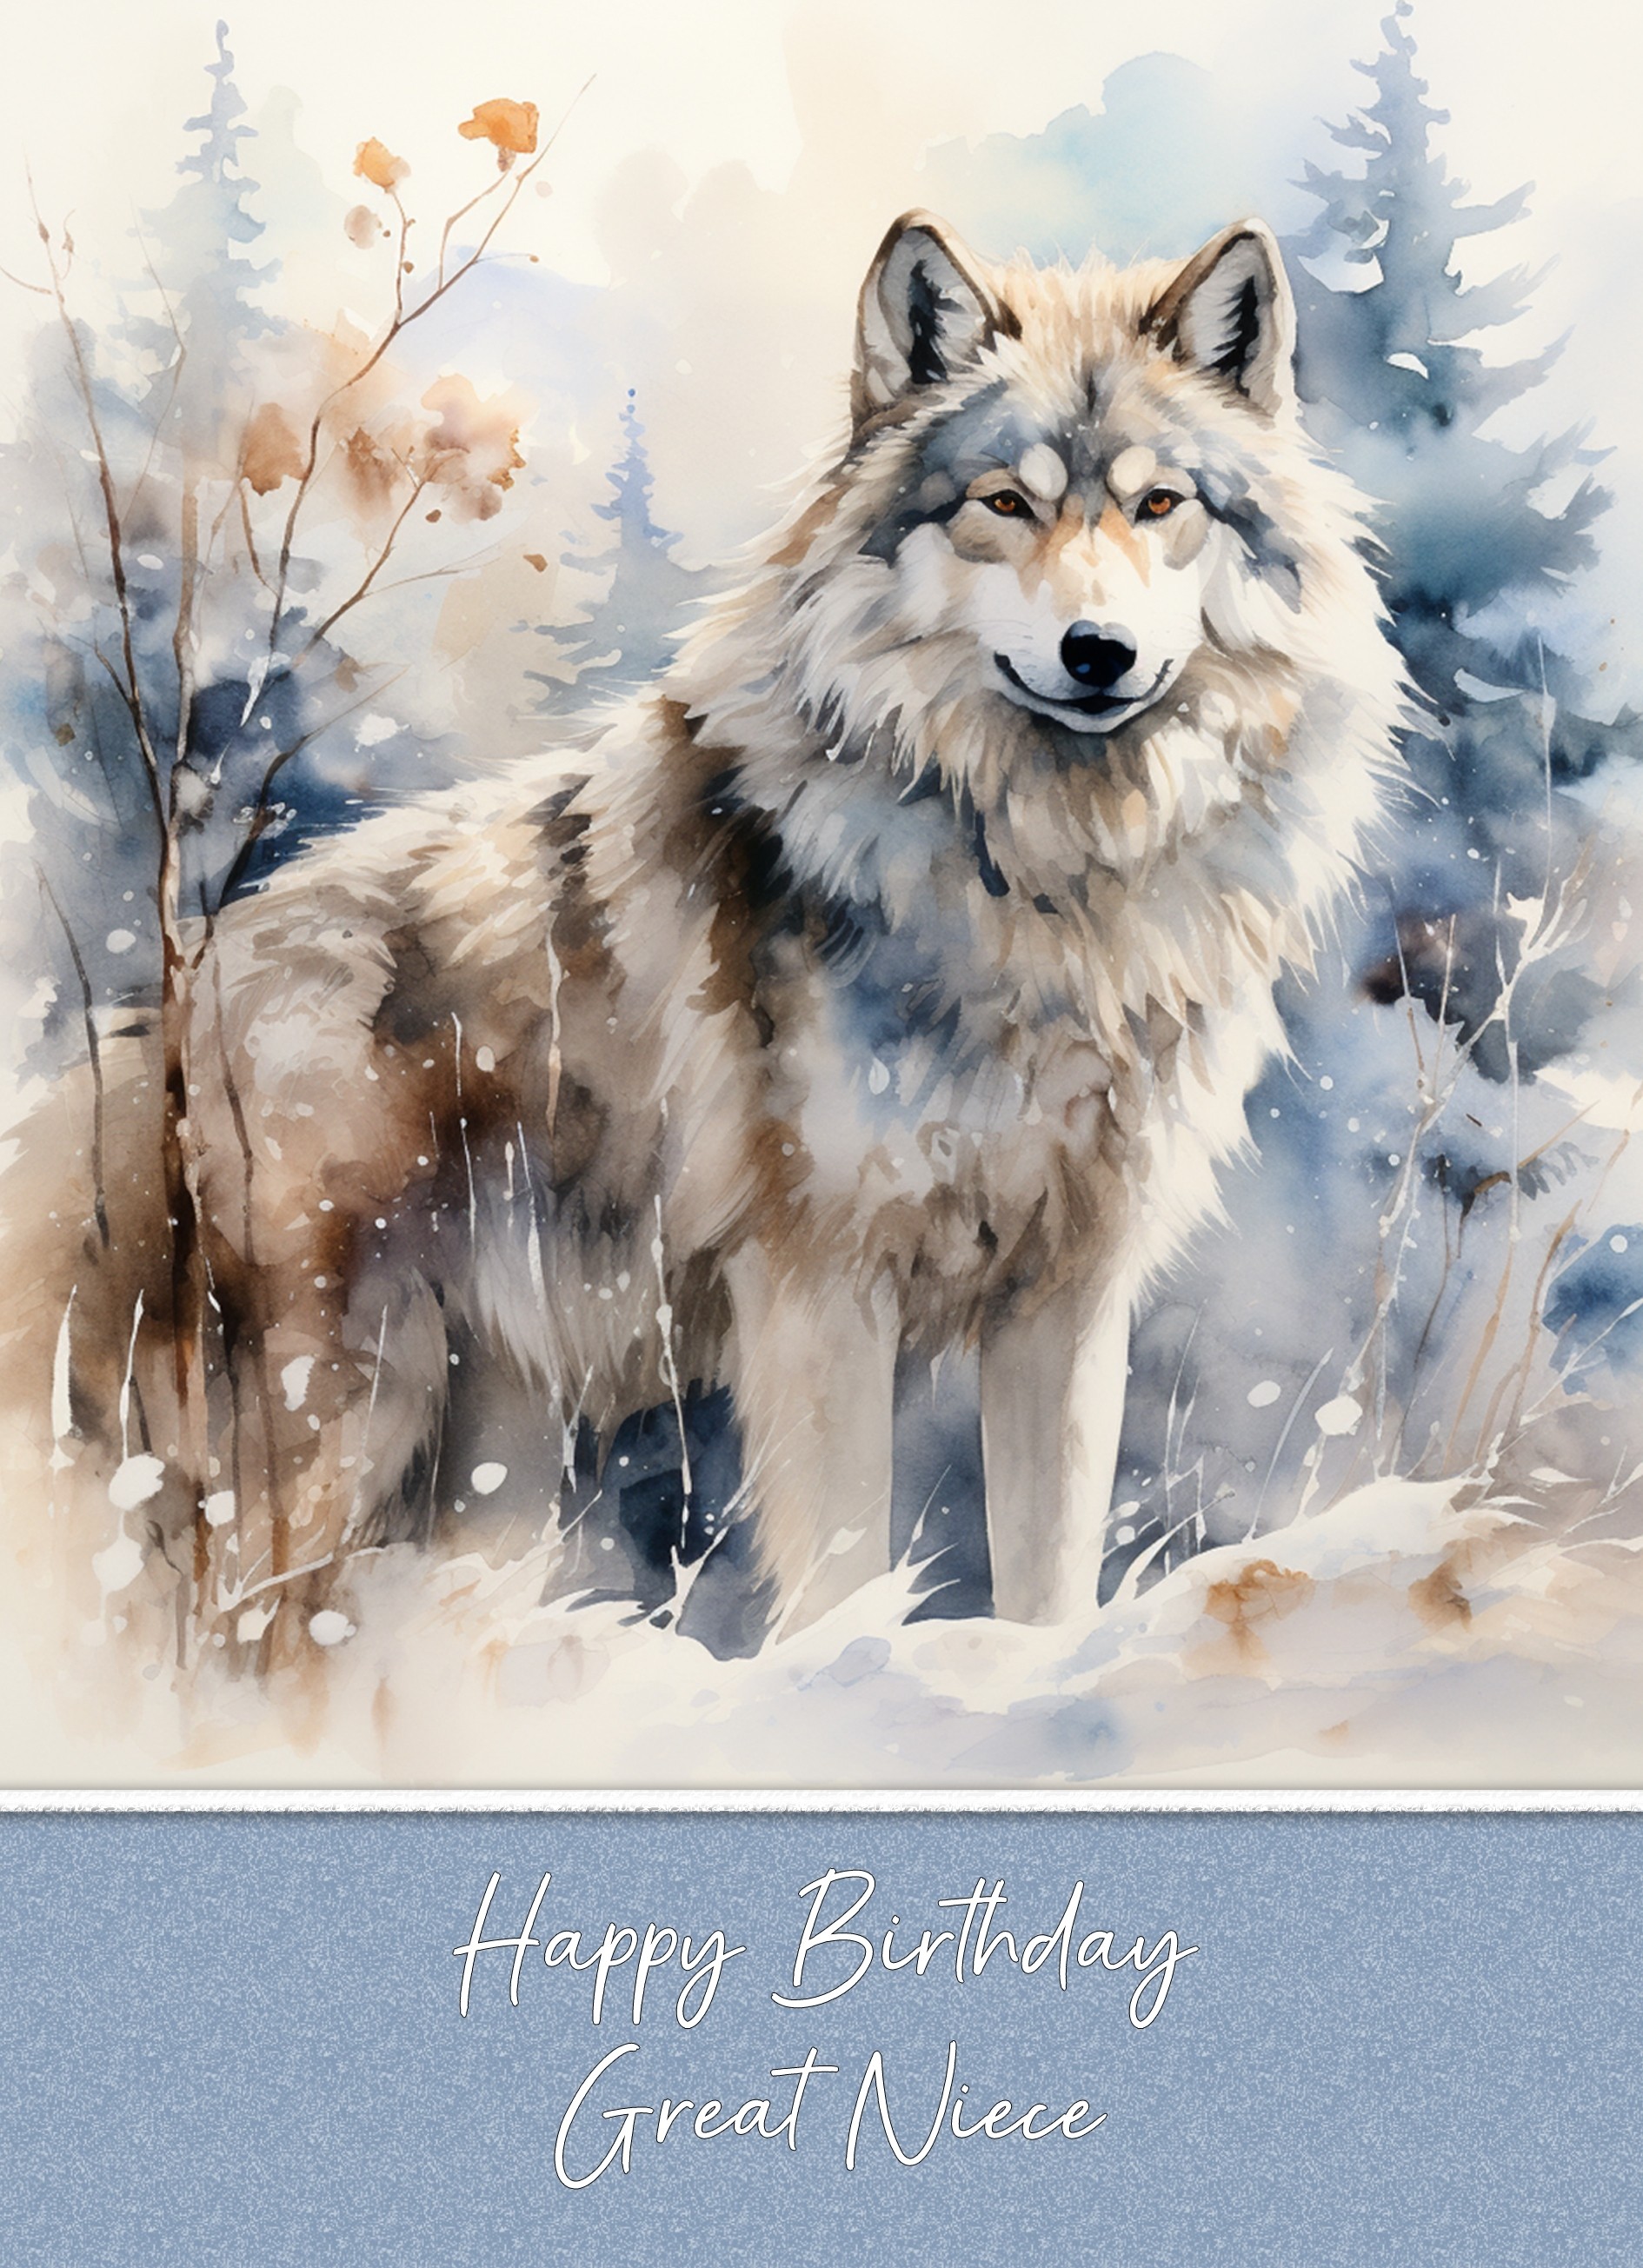 Birthday Card For Great Niece (Fantasy Wolf Art)